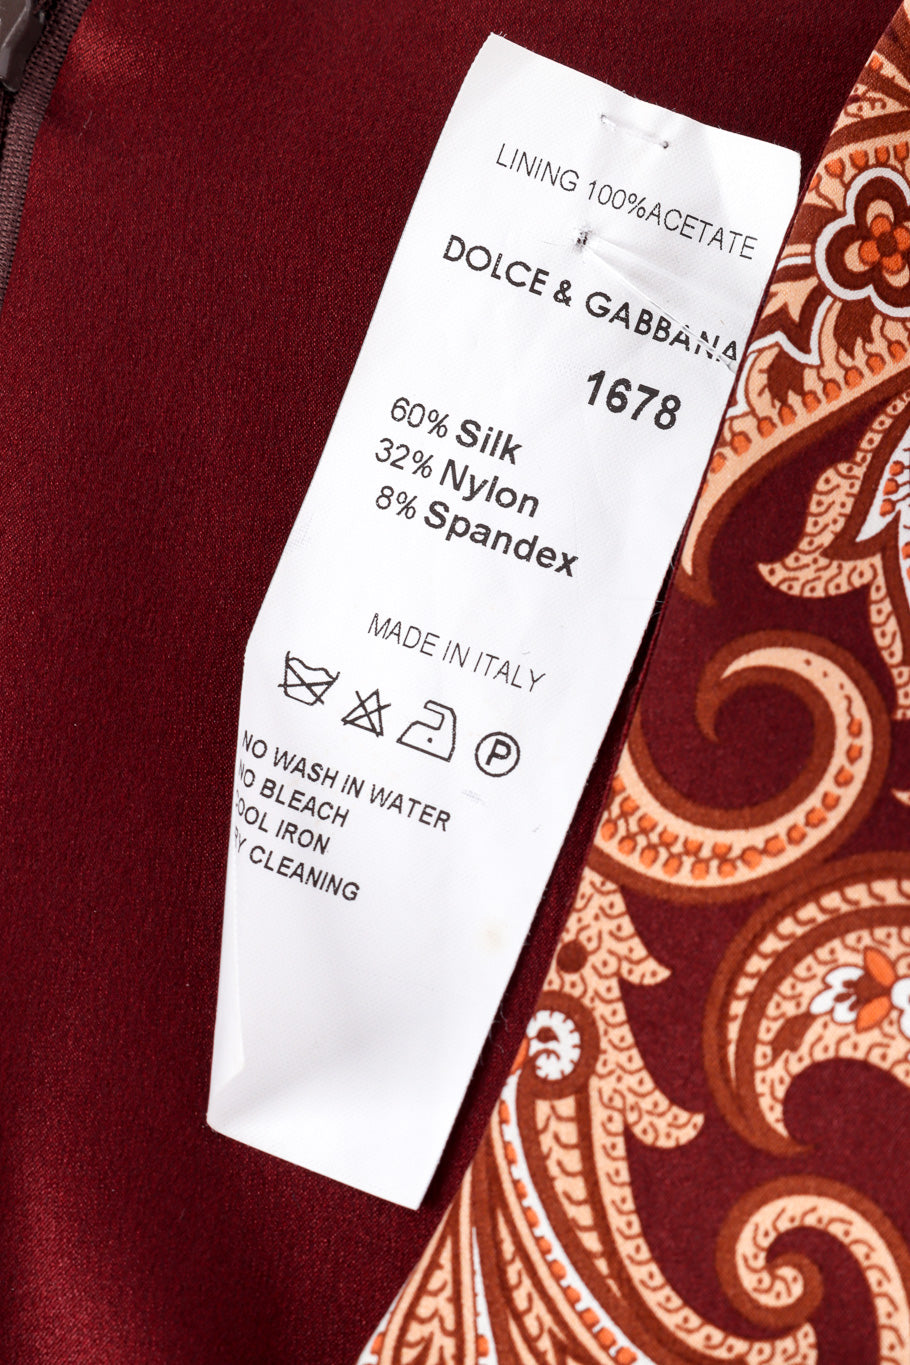 Sheath dress by Dolce & Gabbana fabric tag @recessla